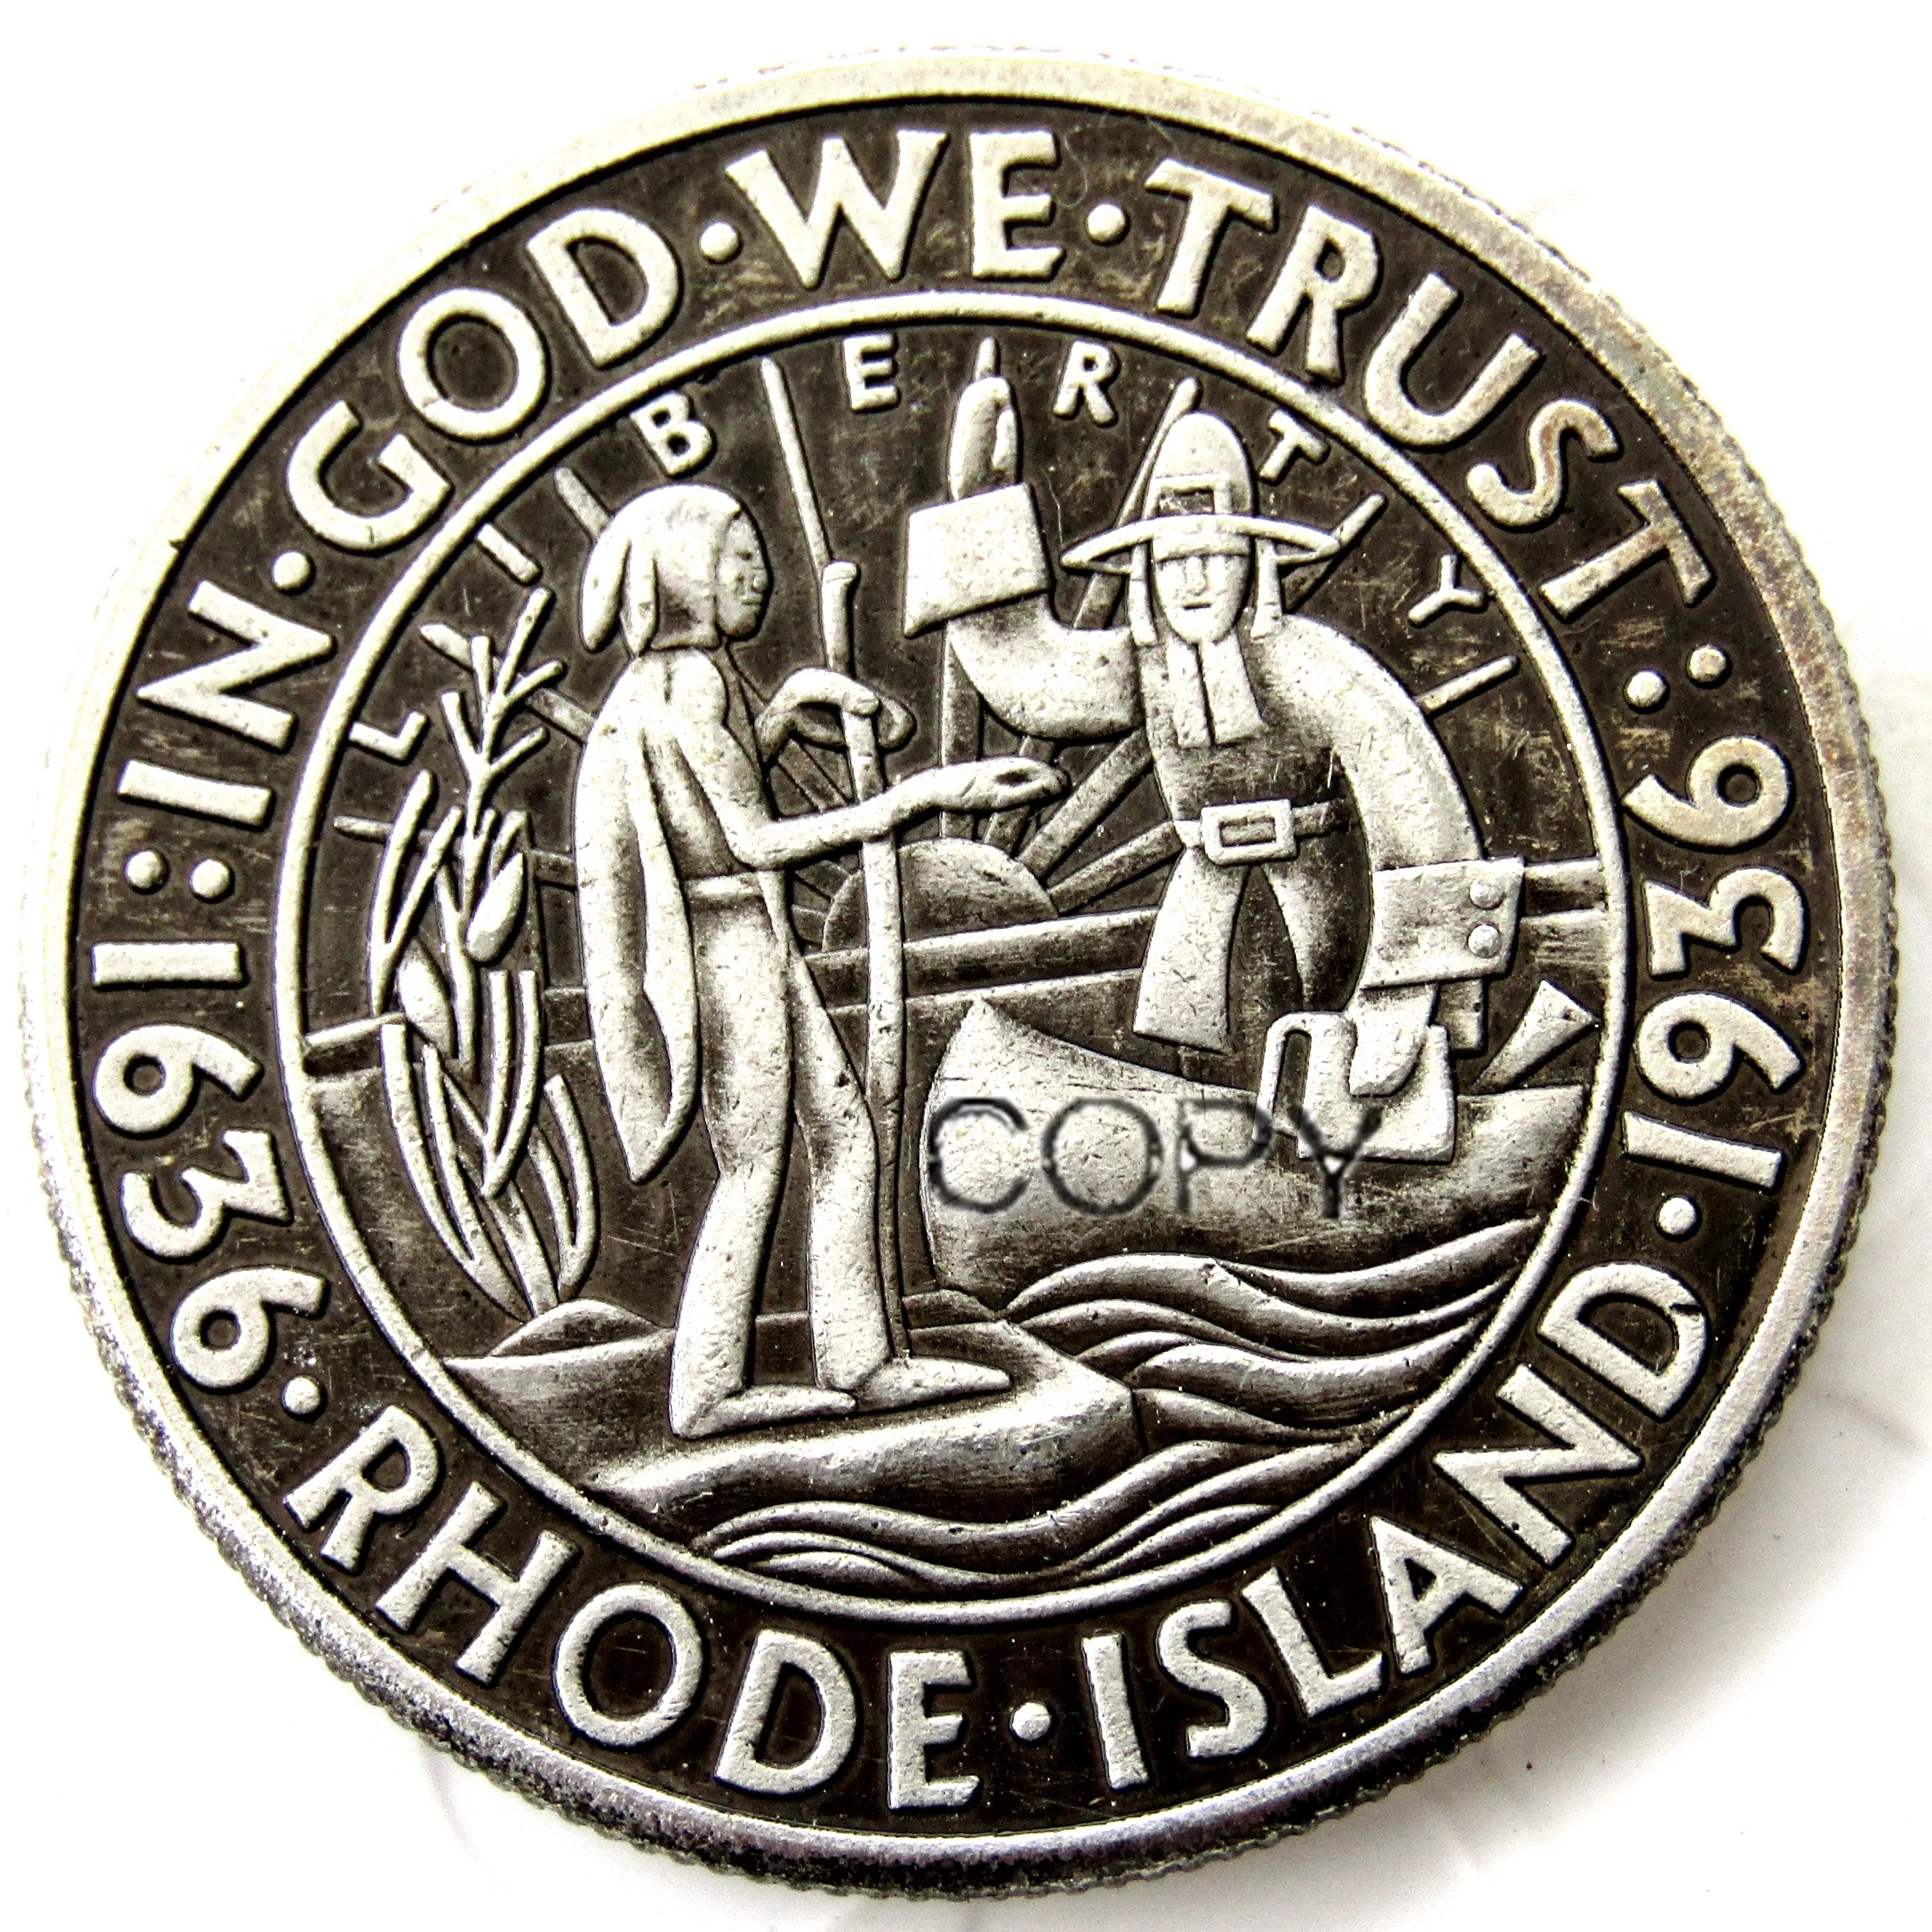 EUA 1936 Rhode Island comemorativo de meio dólar prateado copy cópia de moeda de metal morce